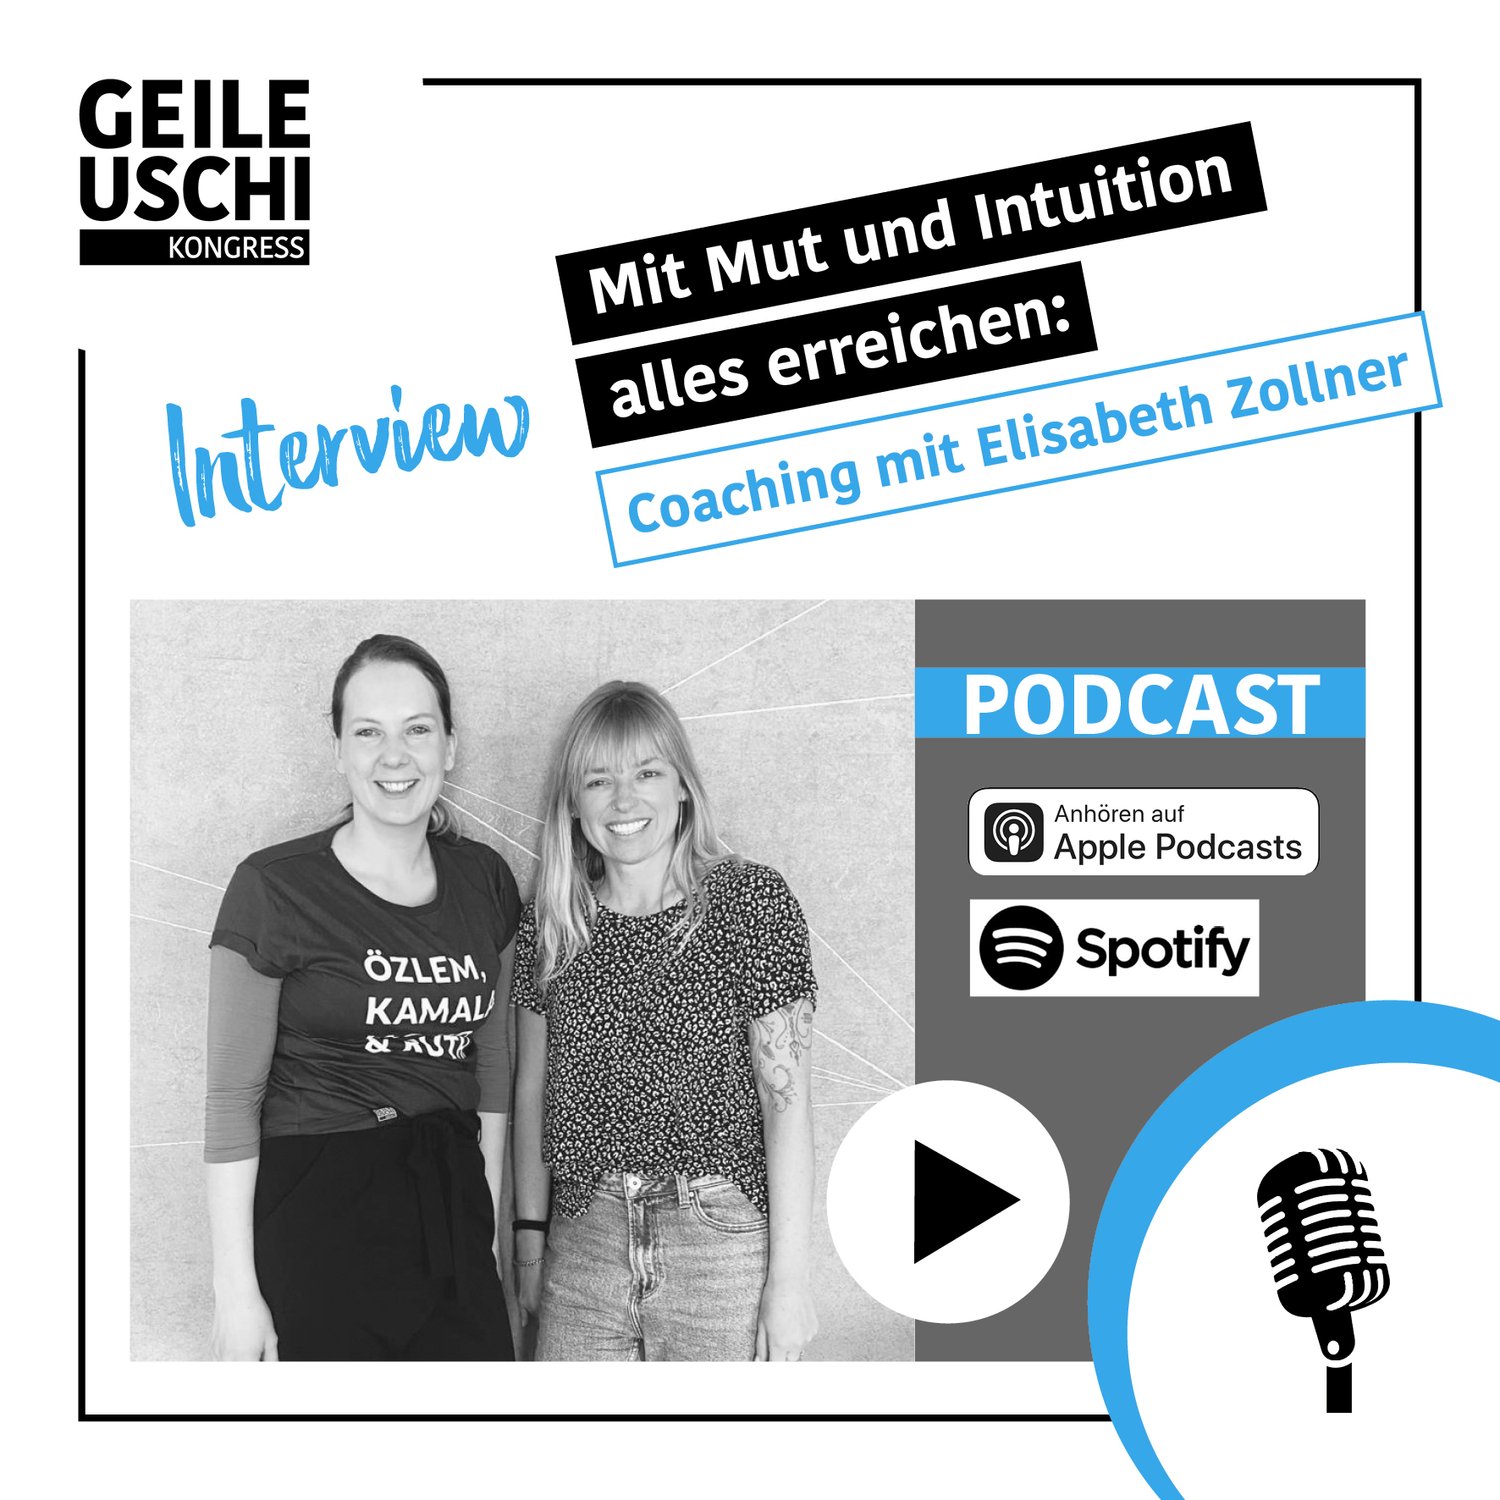 Mit Mut und Intuition alles erreichen: Coaching mit Elisabeth Zollner (37)